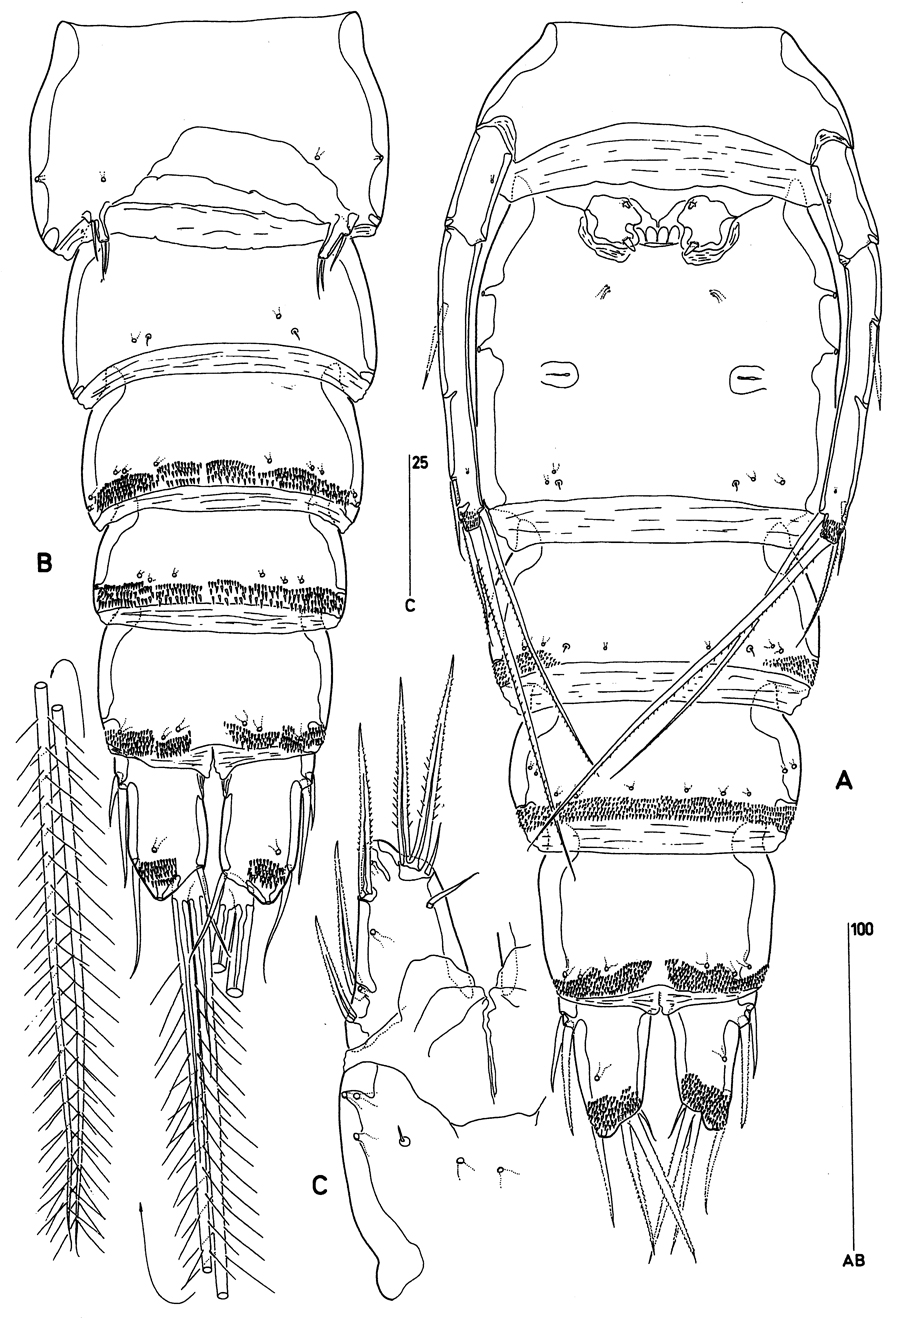 Species Clytemnestra farrani - Plate 4 of morphological figures